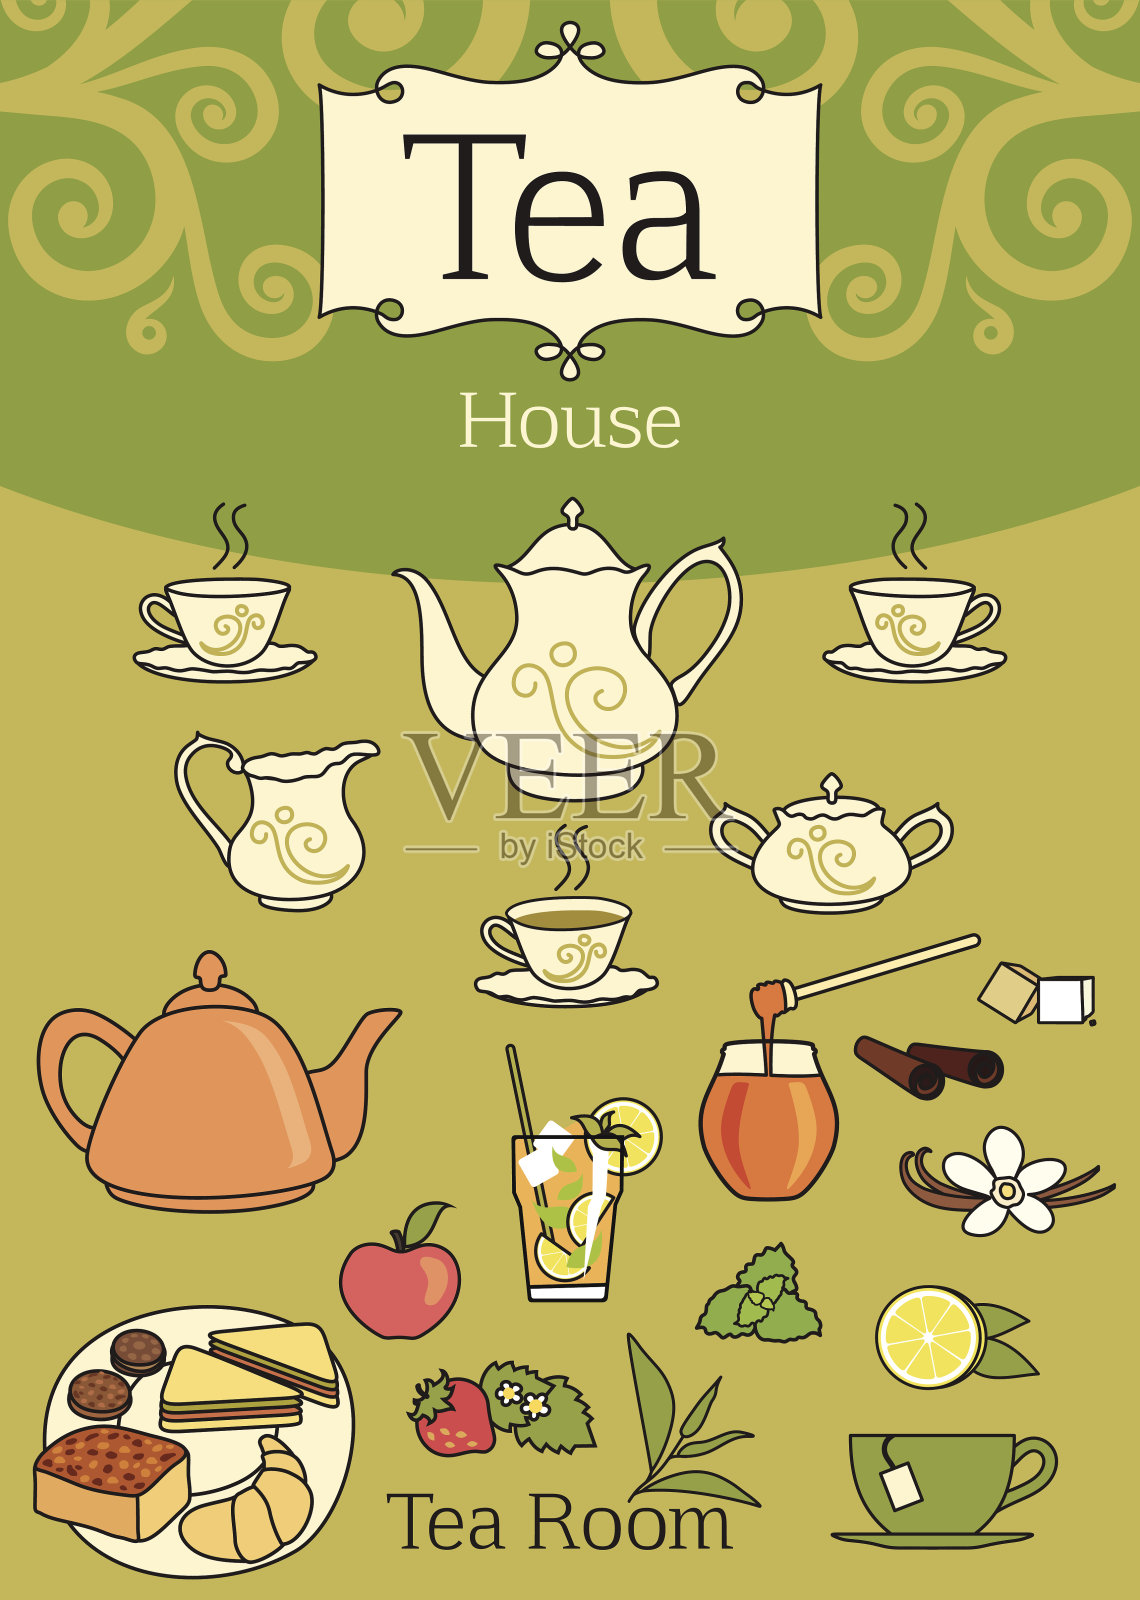 典雅的茶具设计元素插画图片素材